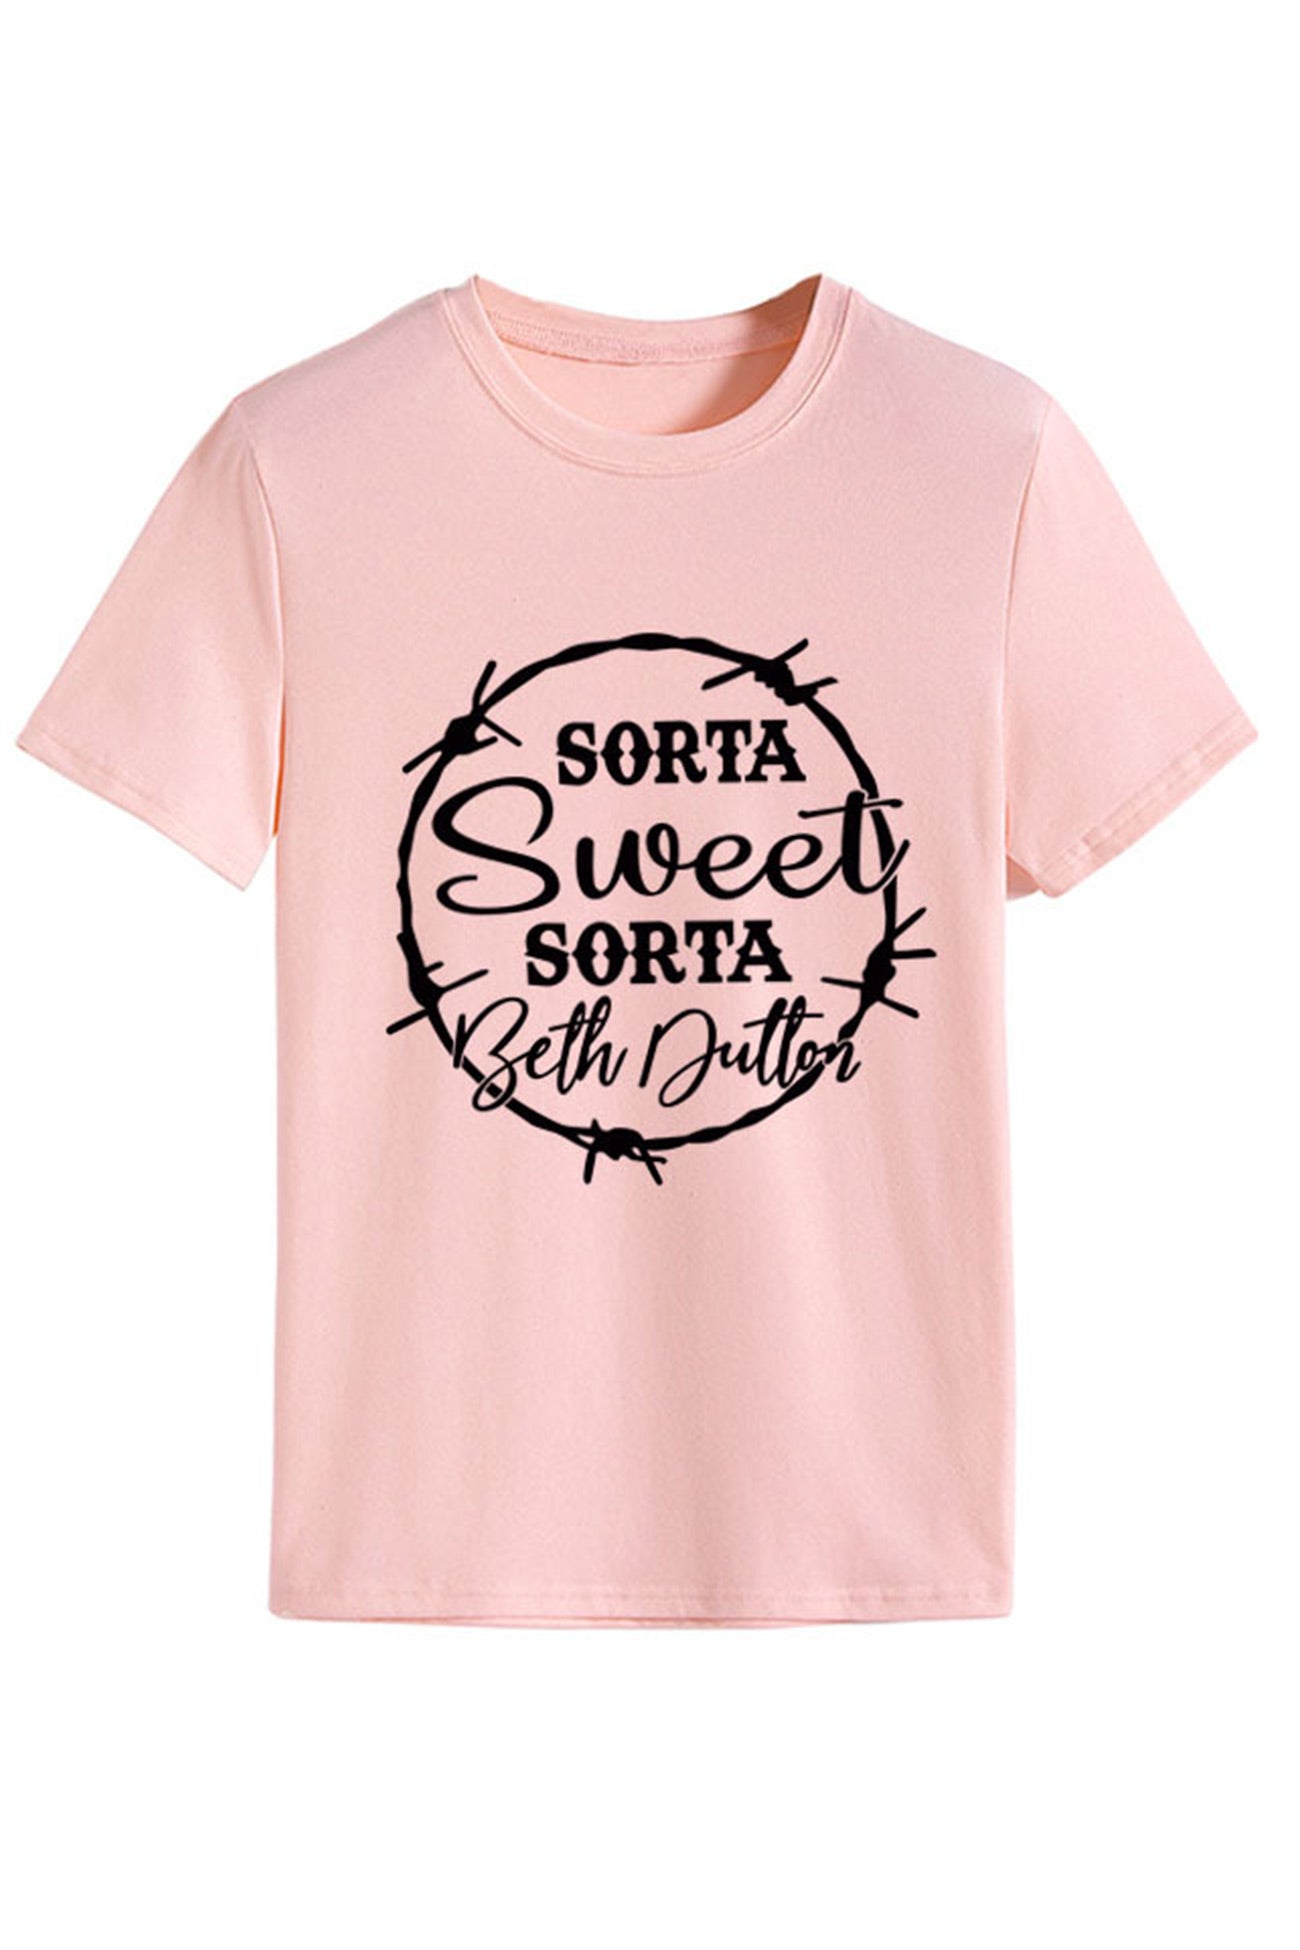 Sorta Sweet Printed T-shirt